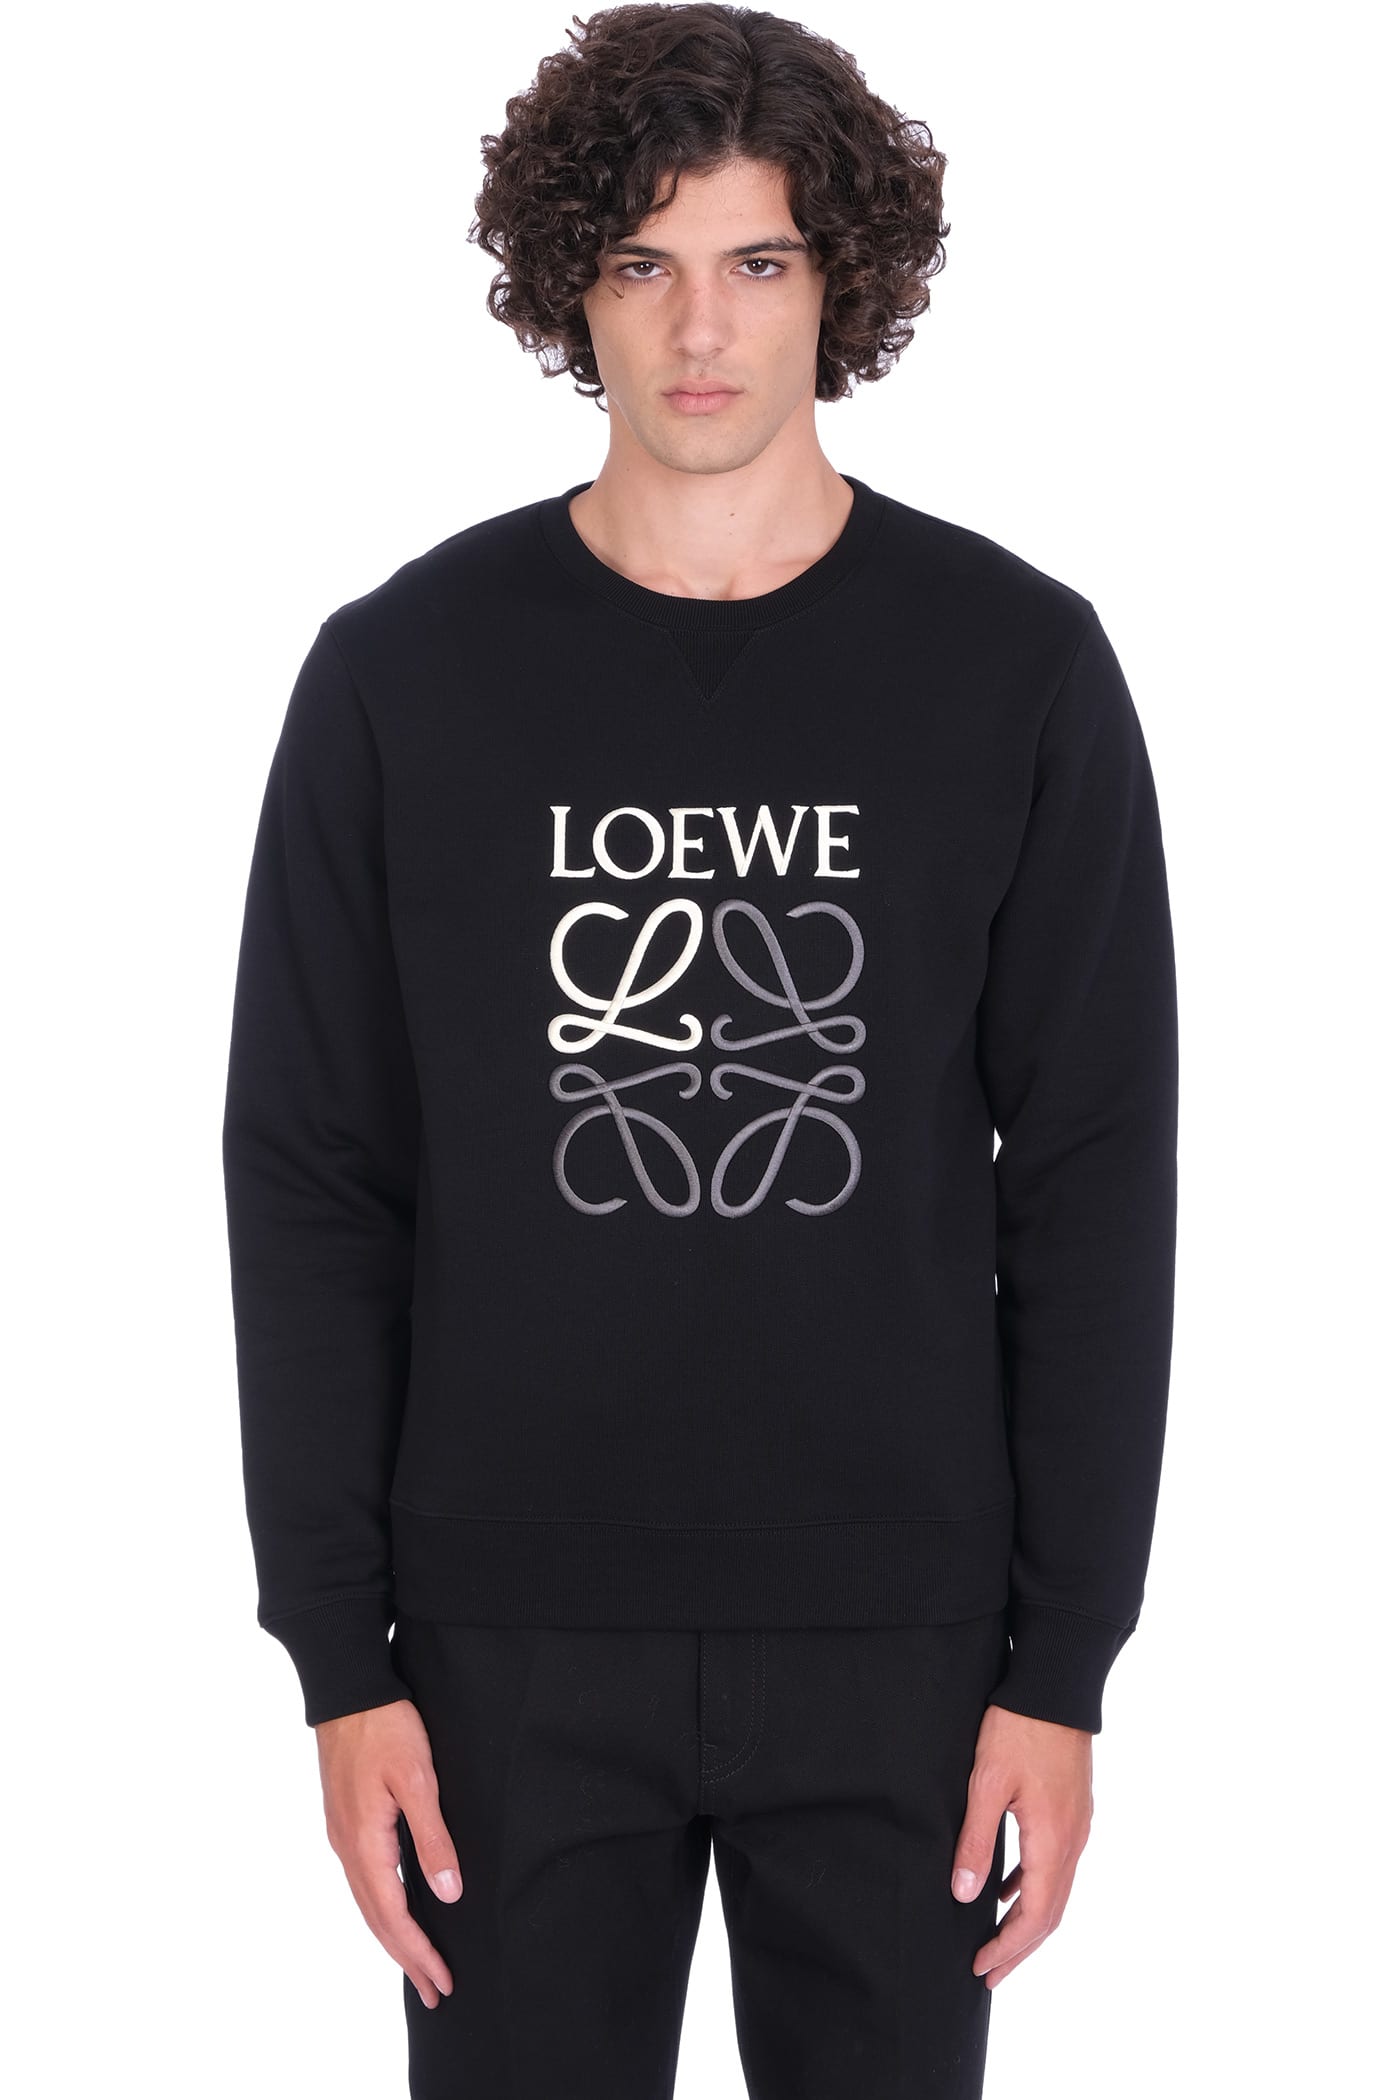 Loewe Sweatshirt In Black Polyester